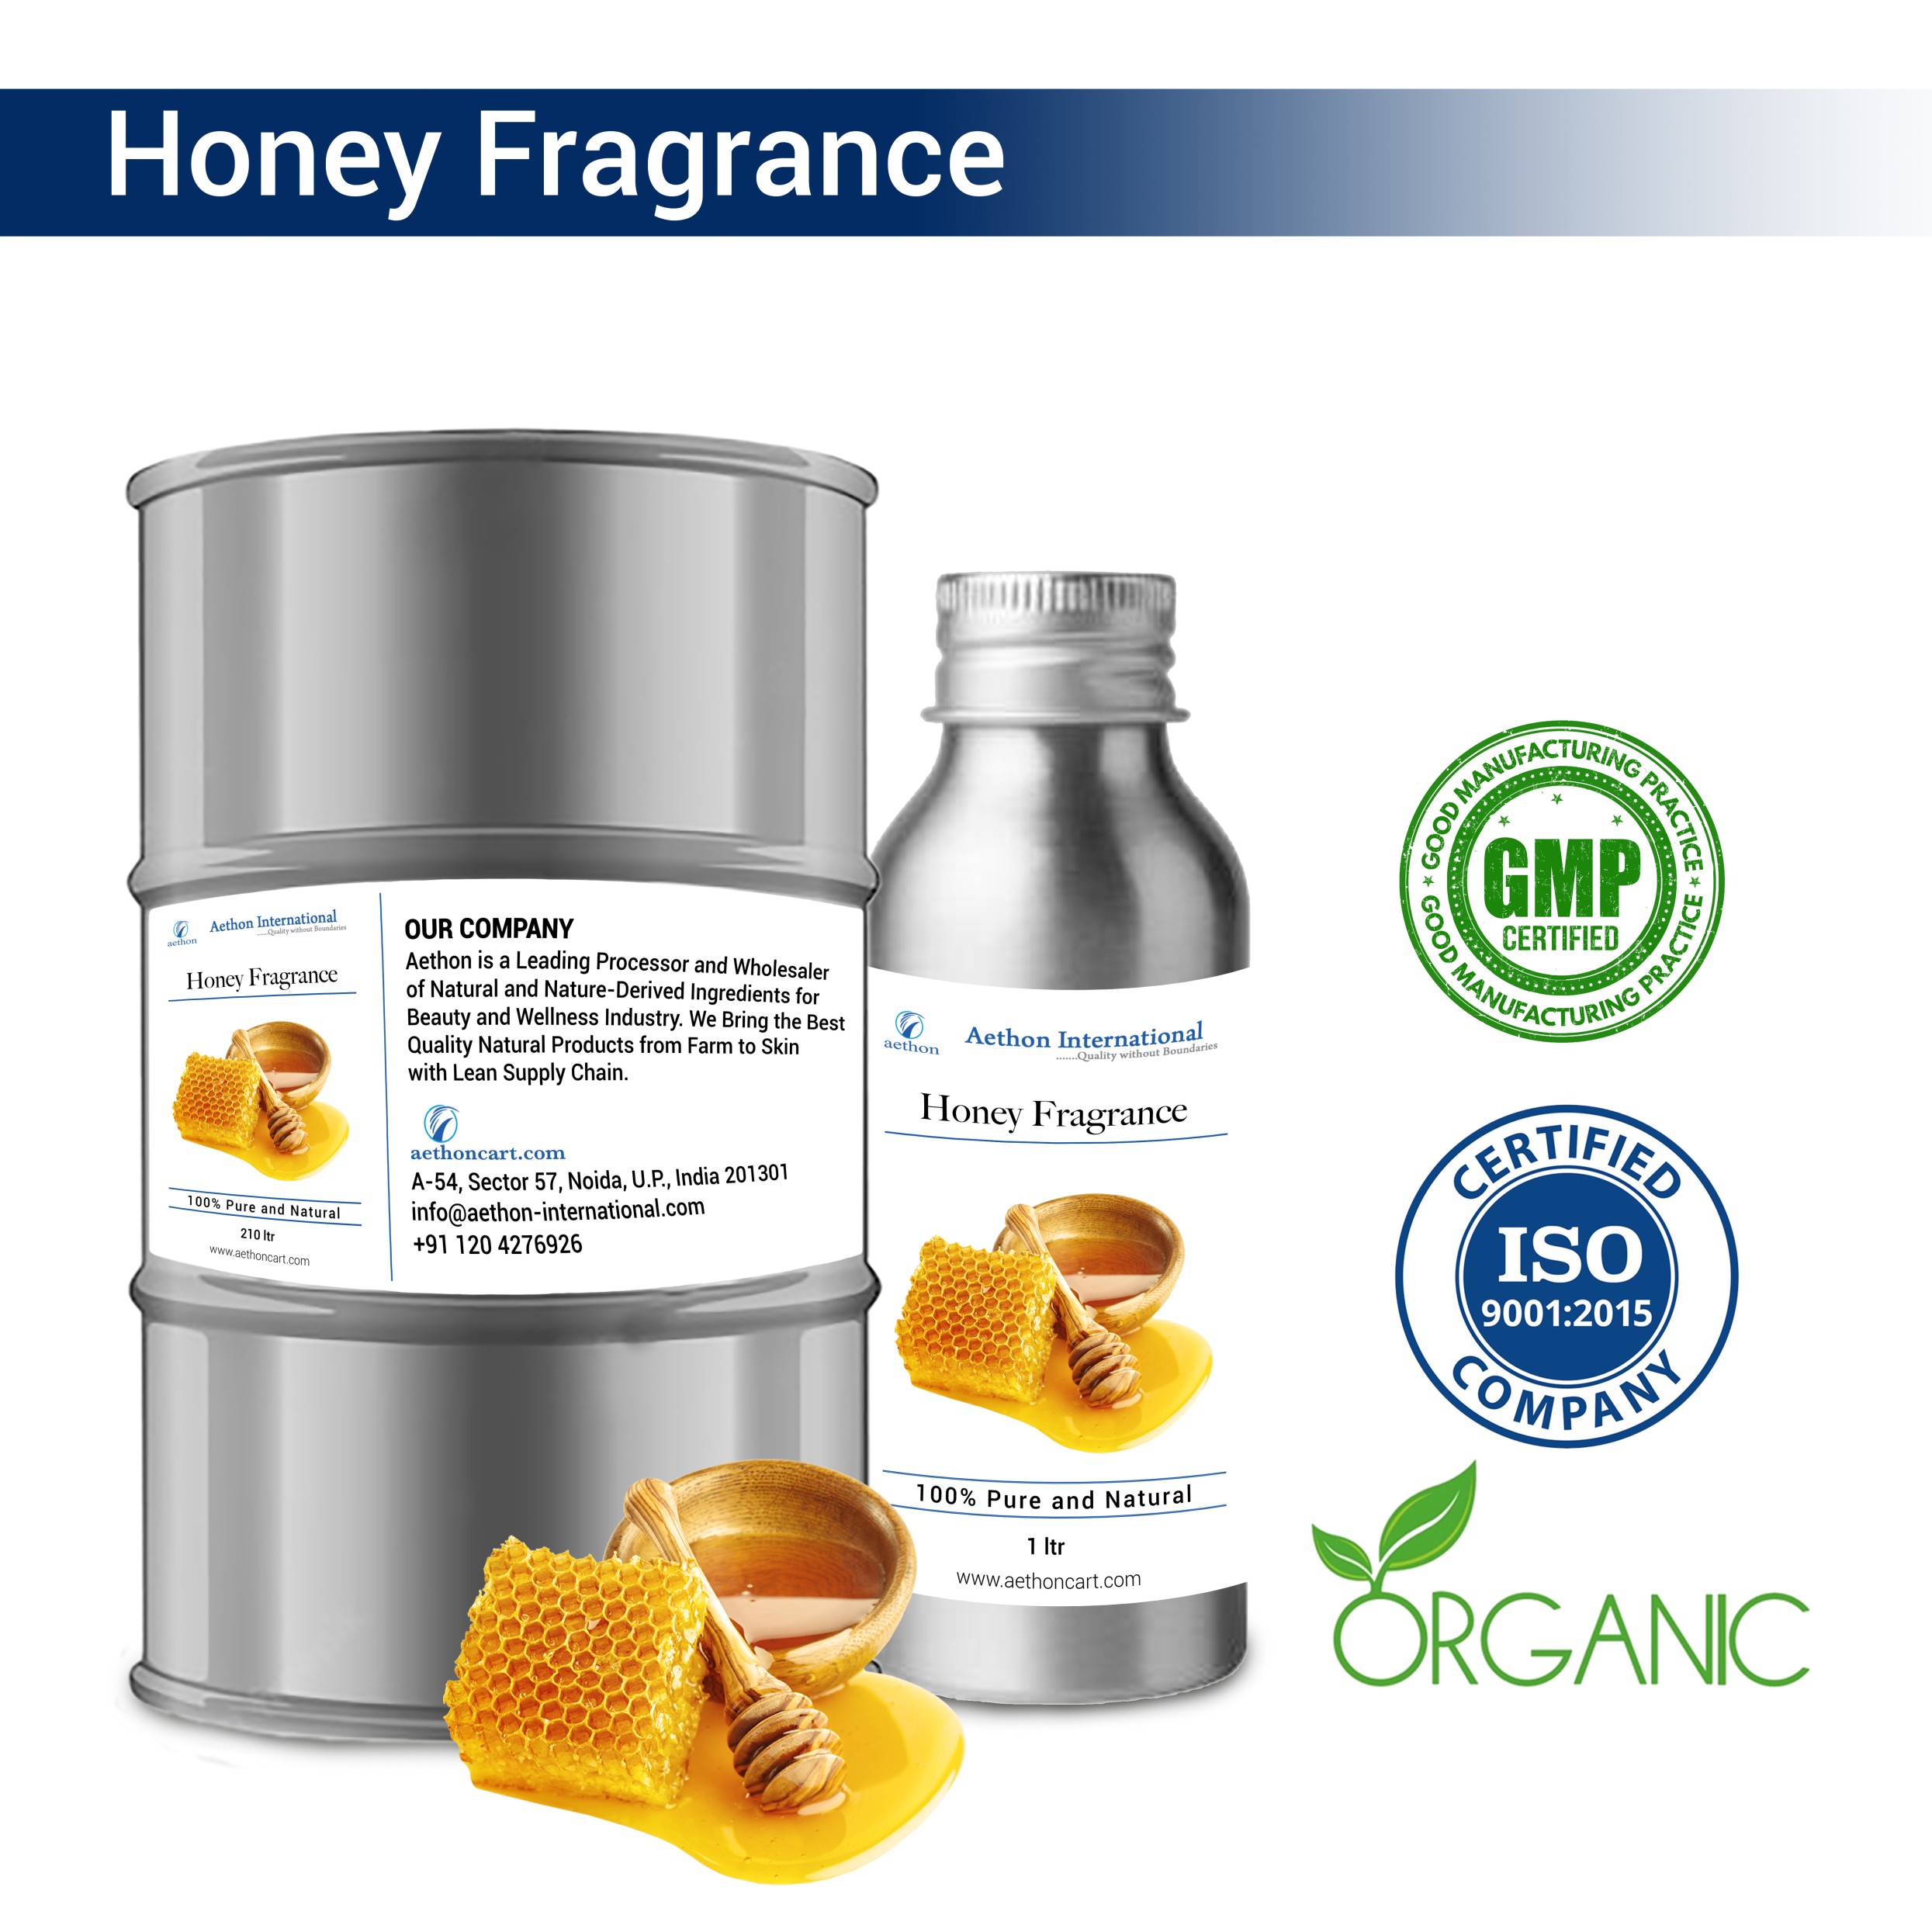 Honey Fragrance